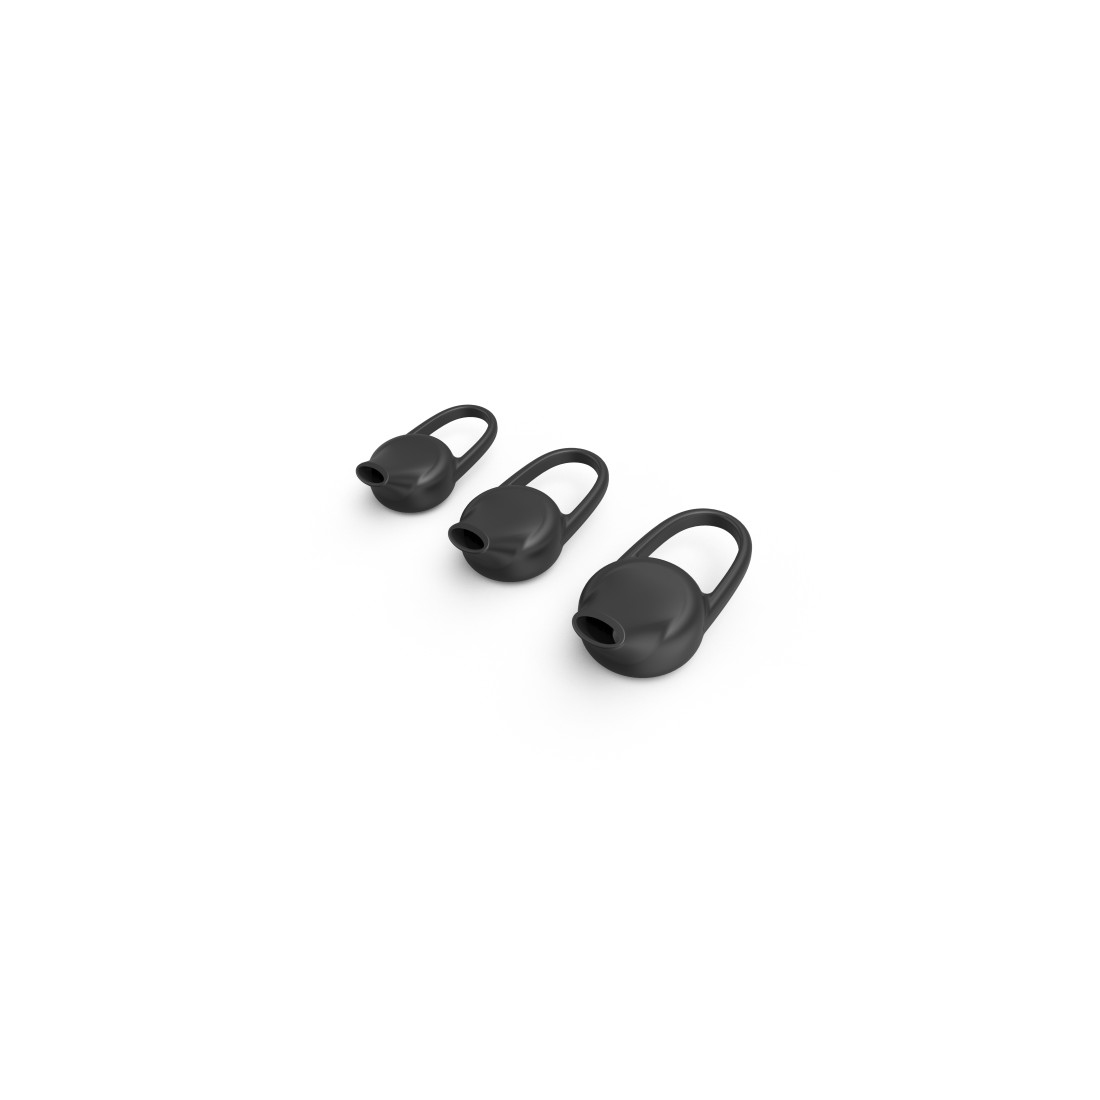 Mono-Bluetooth®-headset  MyVoice1500 , multipoint, spraakbes